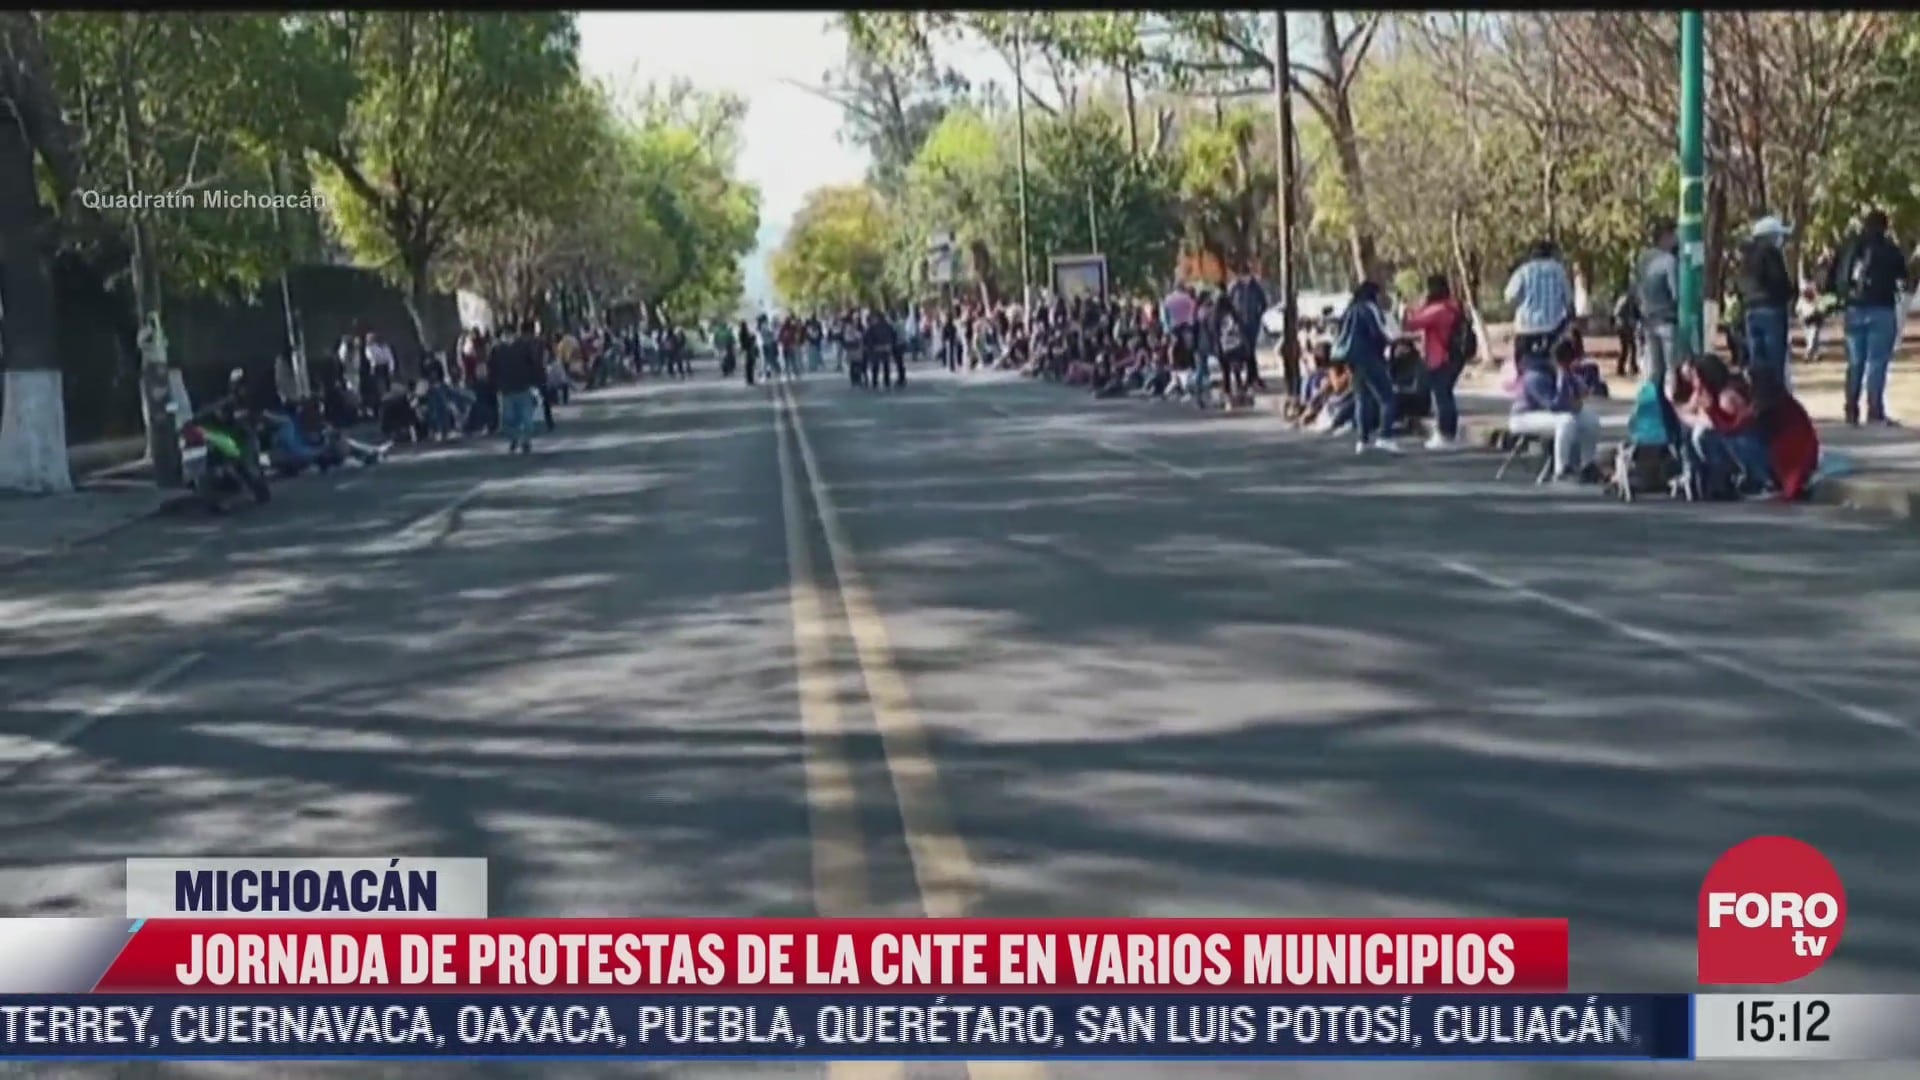 jornada de protestas de integrantes de la cnte en municipios de michoacan